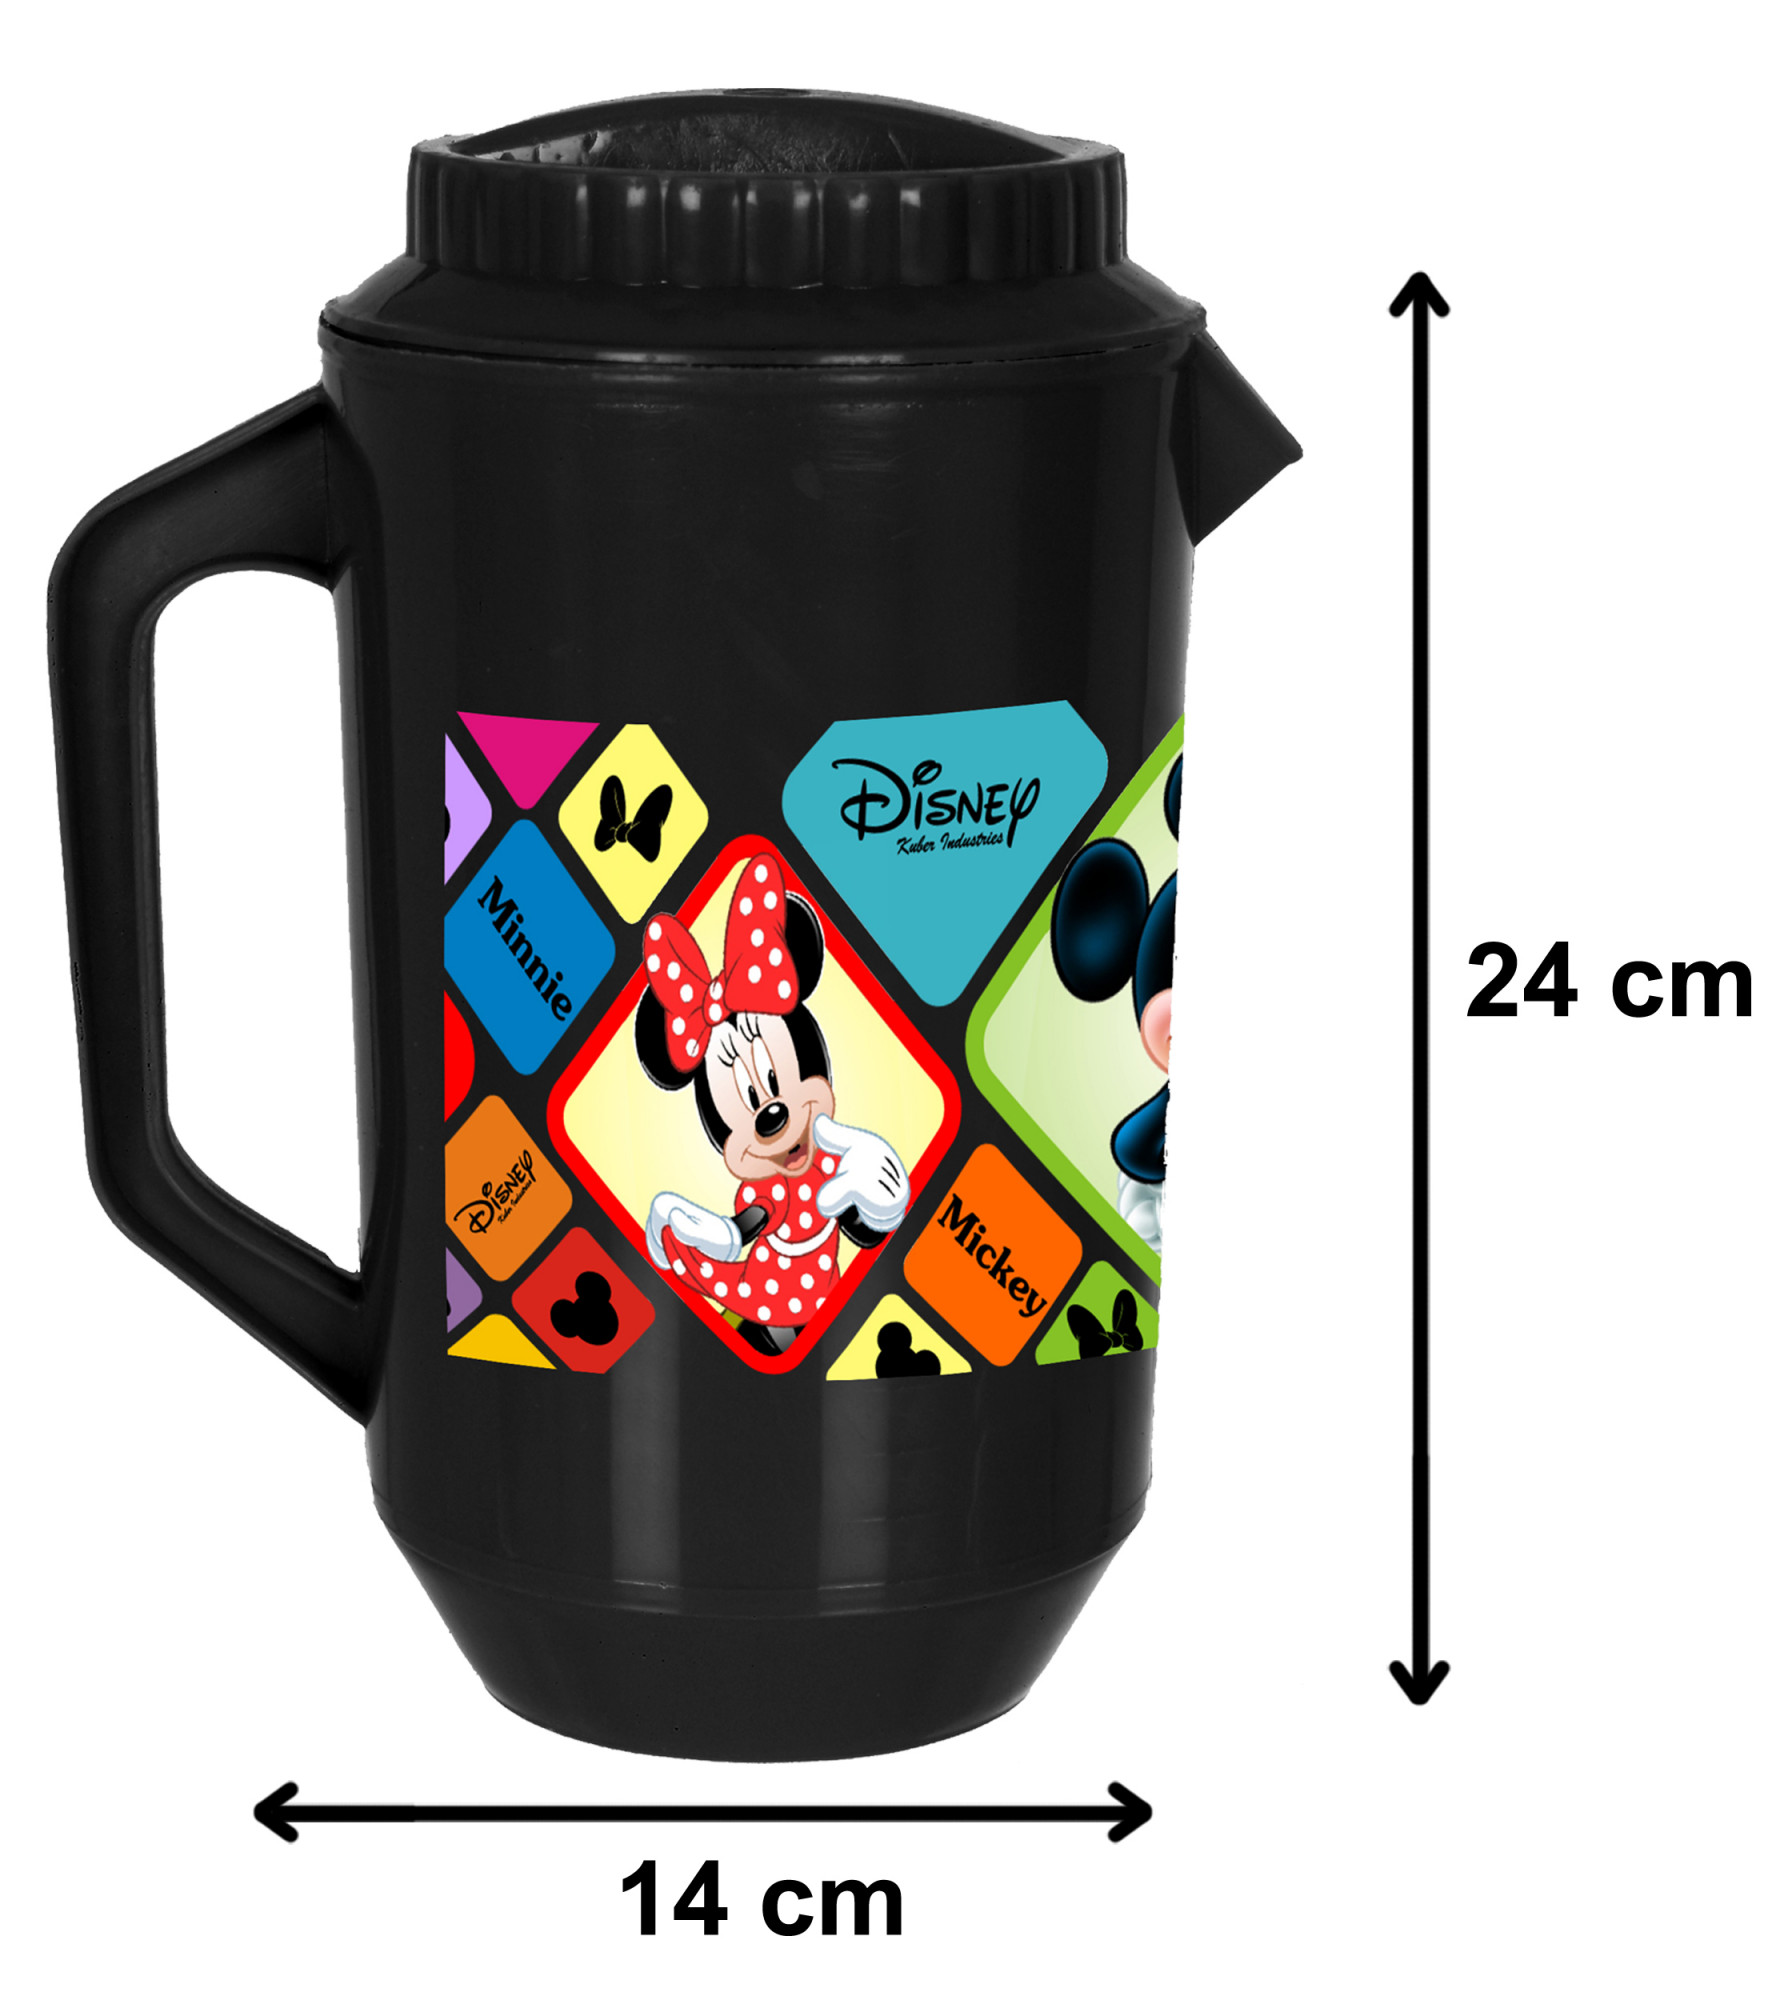 Kuber Industries Disney Mickey Minnie Print Unbreakable Multipurpose Plastic Water & Juice Jug With Lid,2 Ltr (Black)